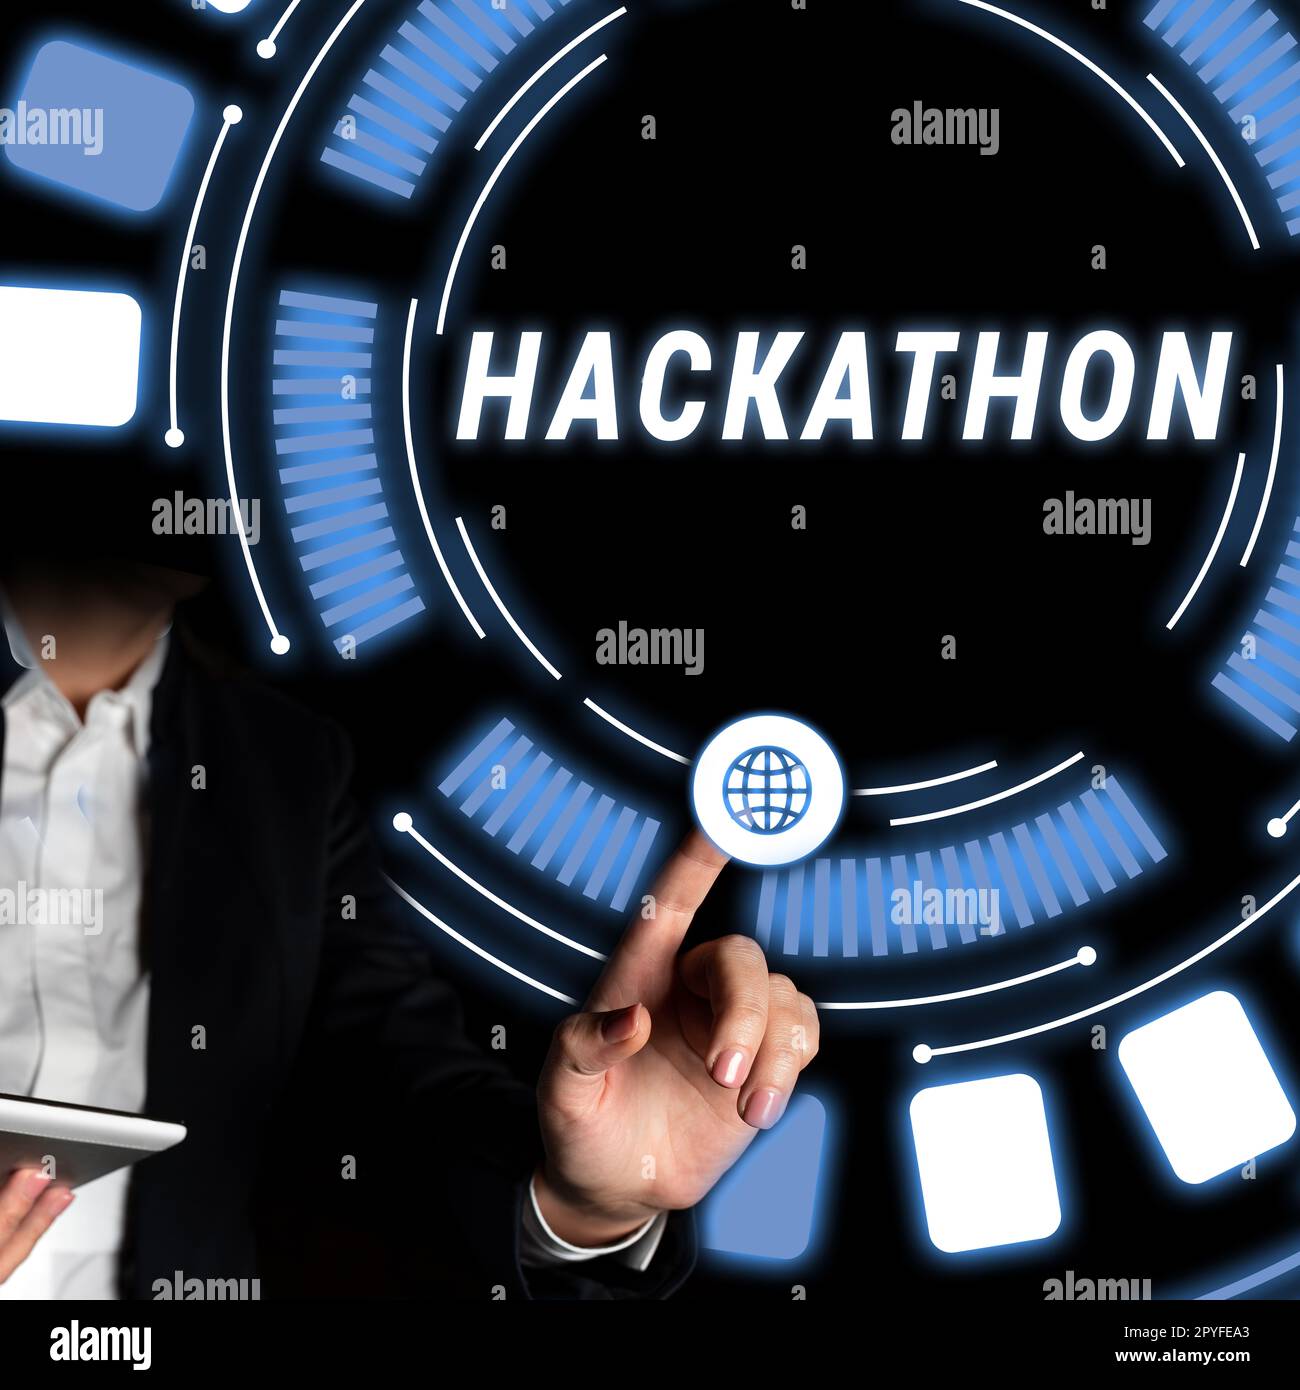 Affiche textuelle montrant Hackathon. Événement de concept d'Internet où un grand nombre de personnes s'engagent dans la programmation Banque D'Images